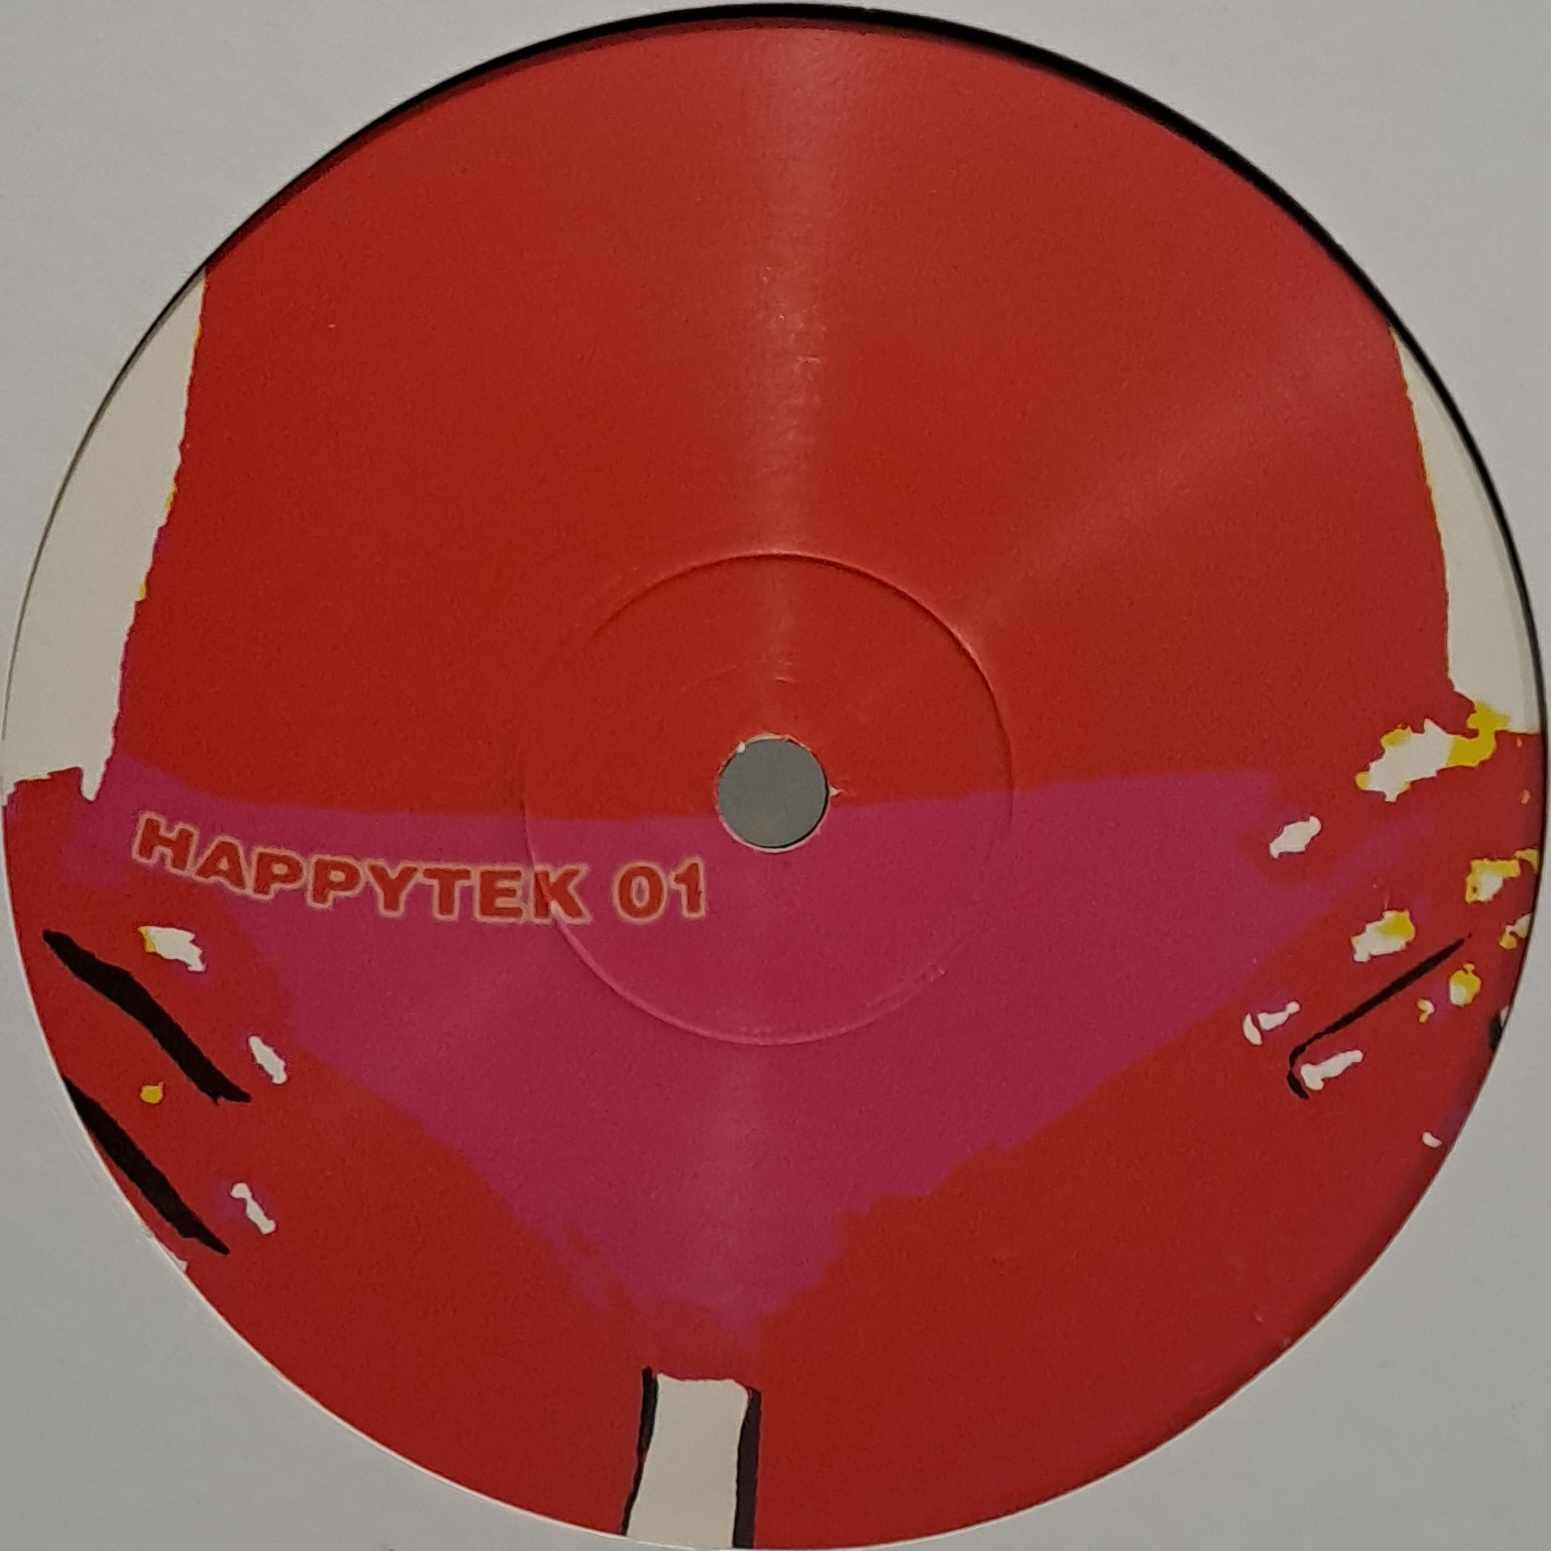 Happytek 01 - vinyle tribecore